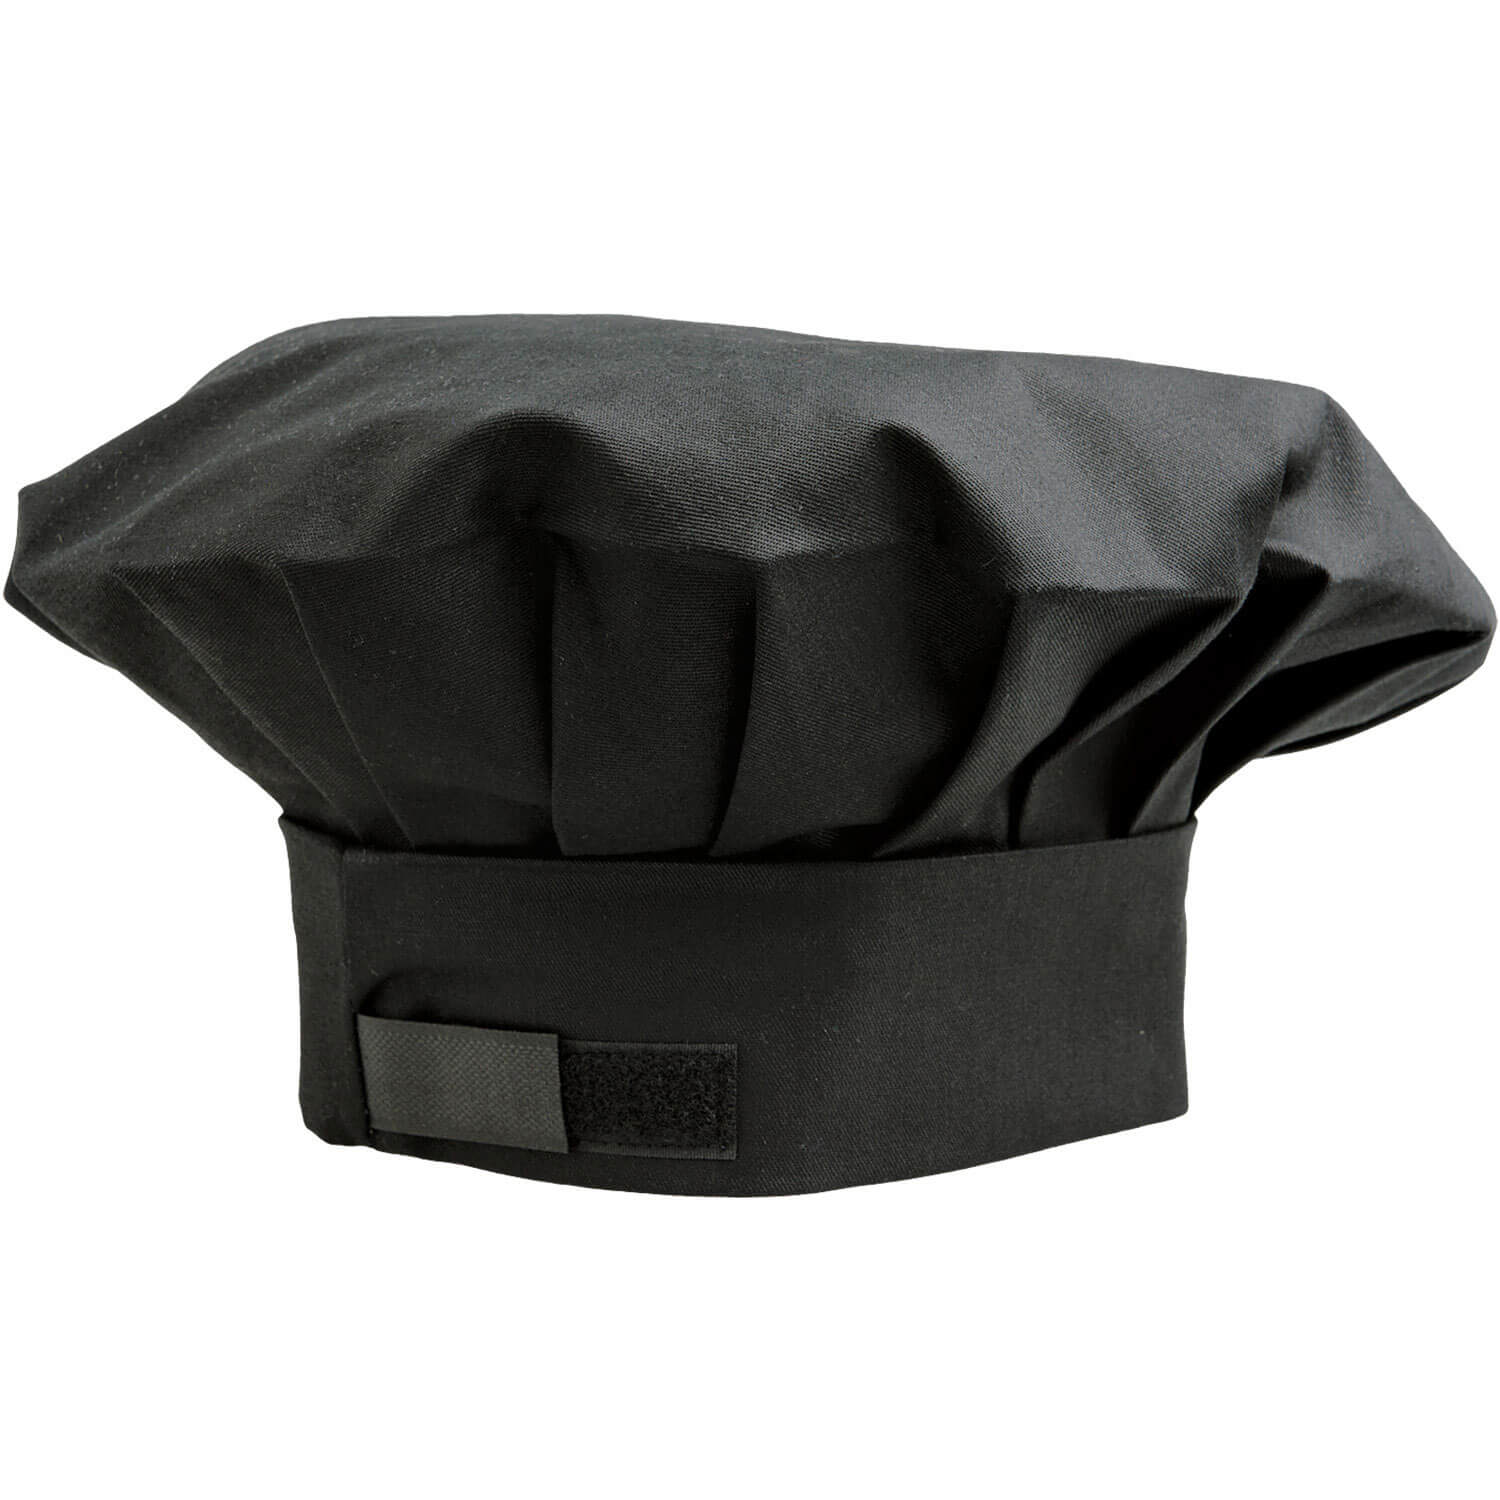 javlin chefs mushroom hat kitchen wear black 3017 BL J54